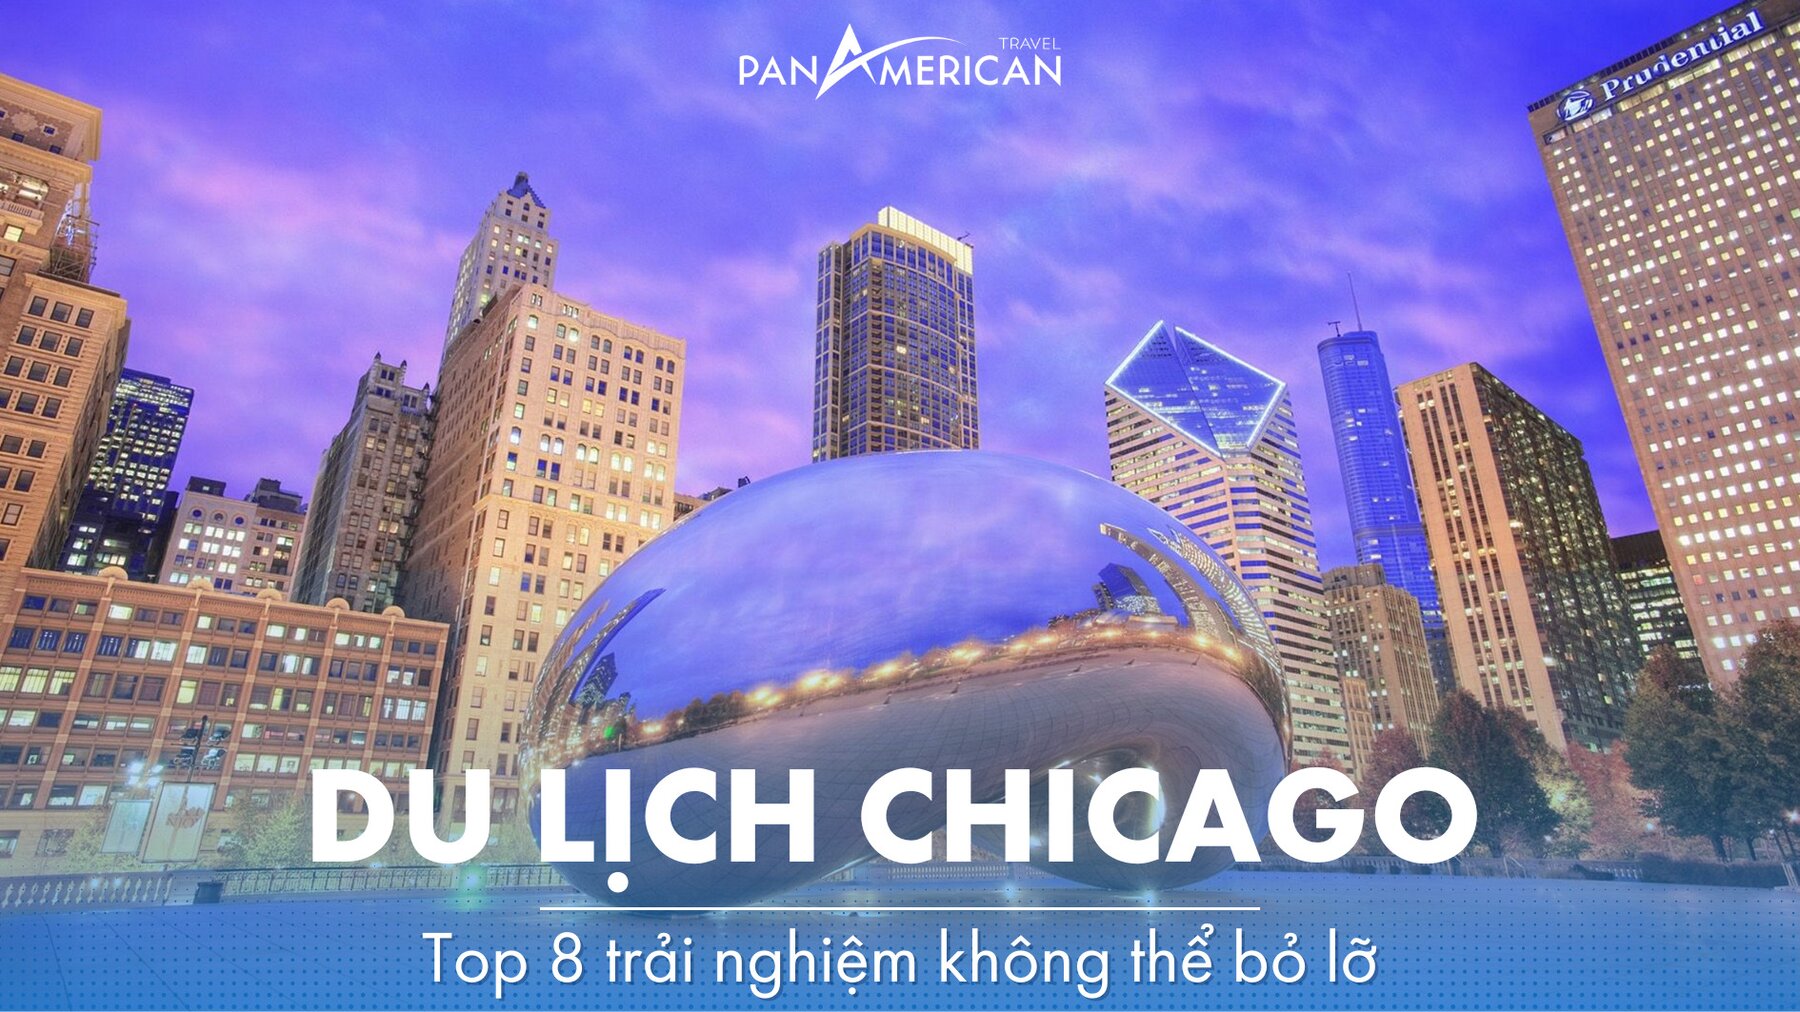 Top 8 trải nghiệm không thể bỏ lỡ khi du lịch Chicago